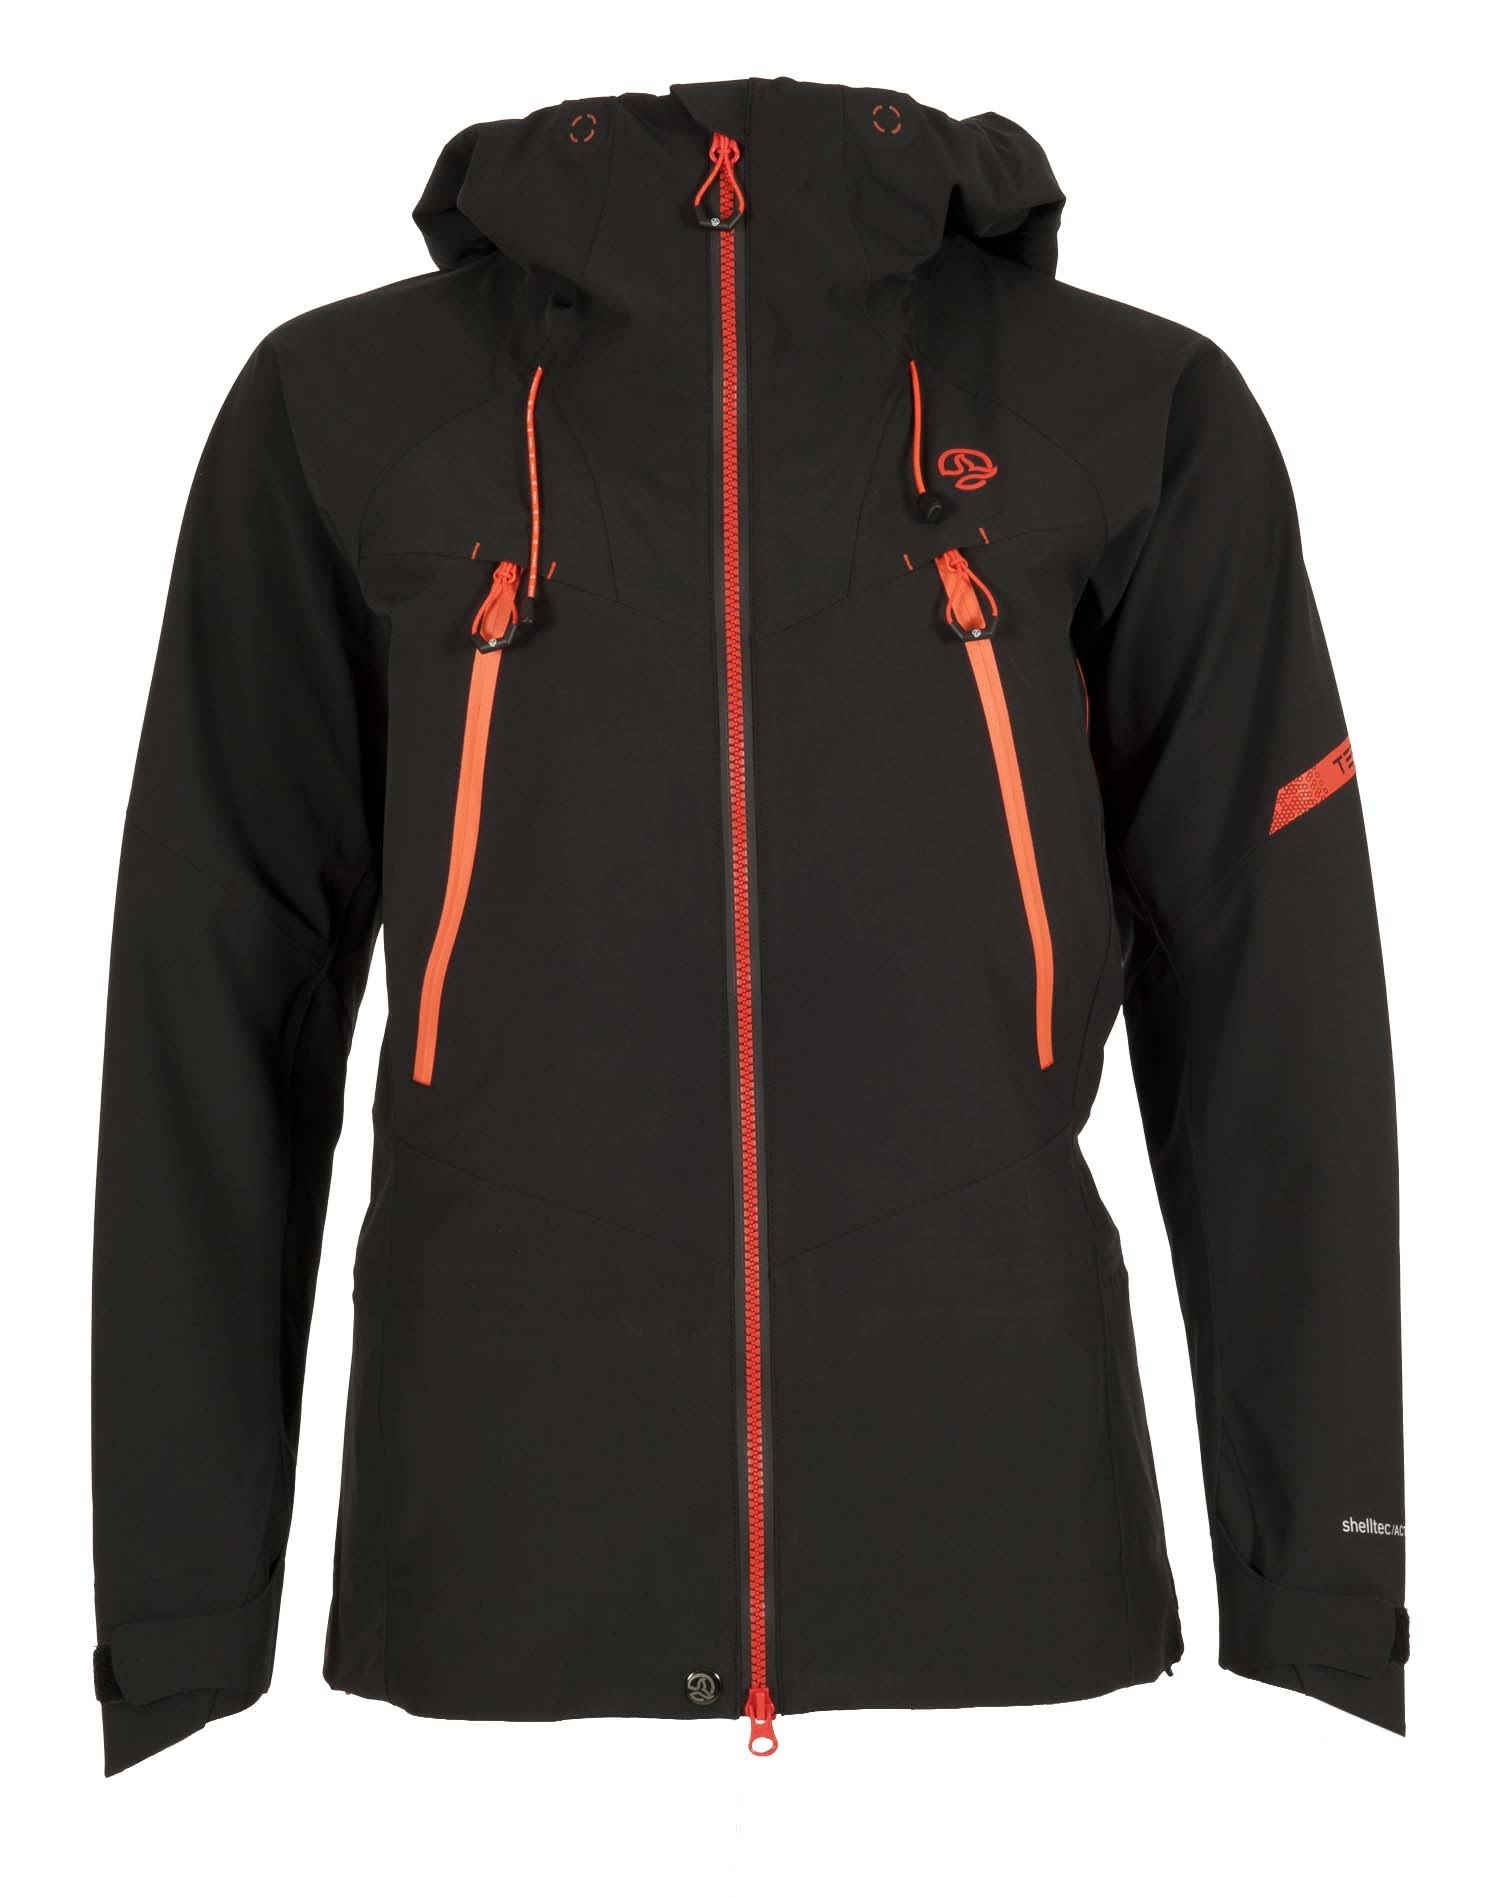 Ternua W Alpine Pro Jacket Rot / Schwarz | Damen Ski- & Snowboardjacke